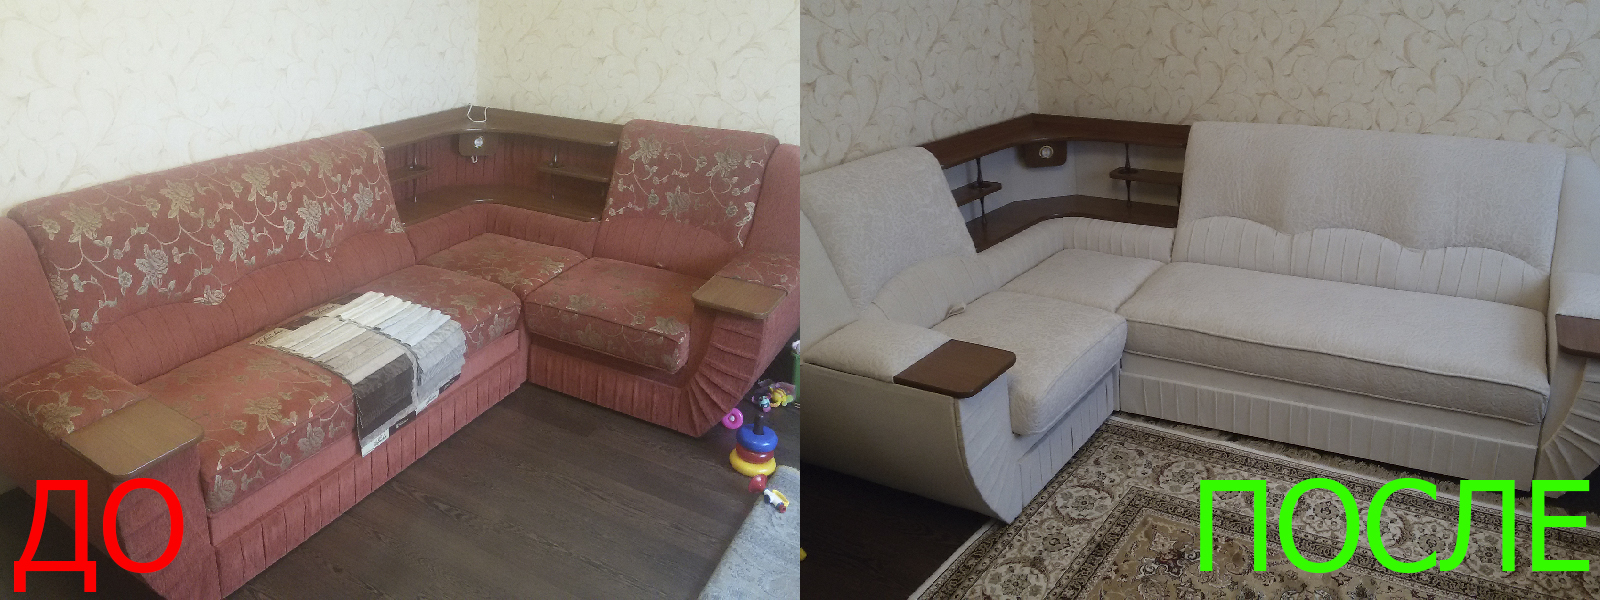 Обшивка мягкой мебели в Казани по разумной стоимости, высокое качество тканей